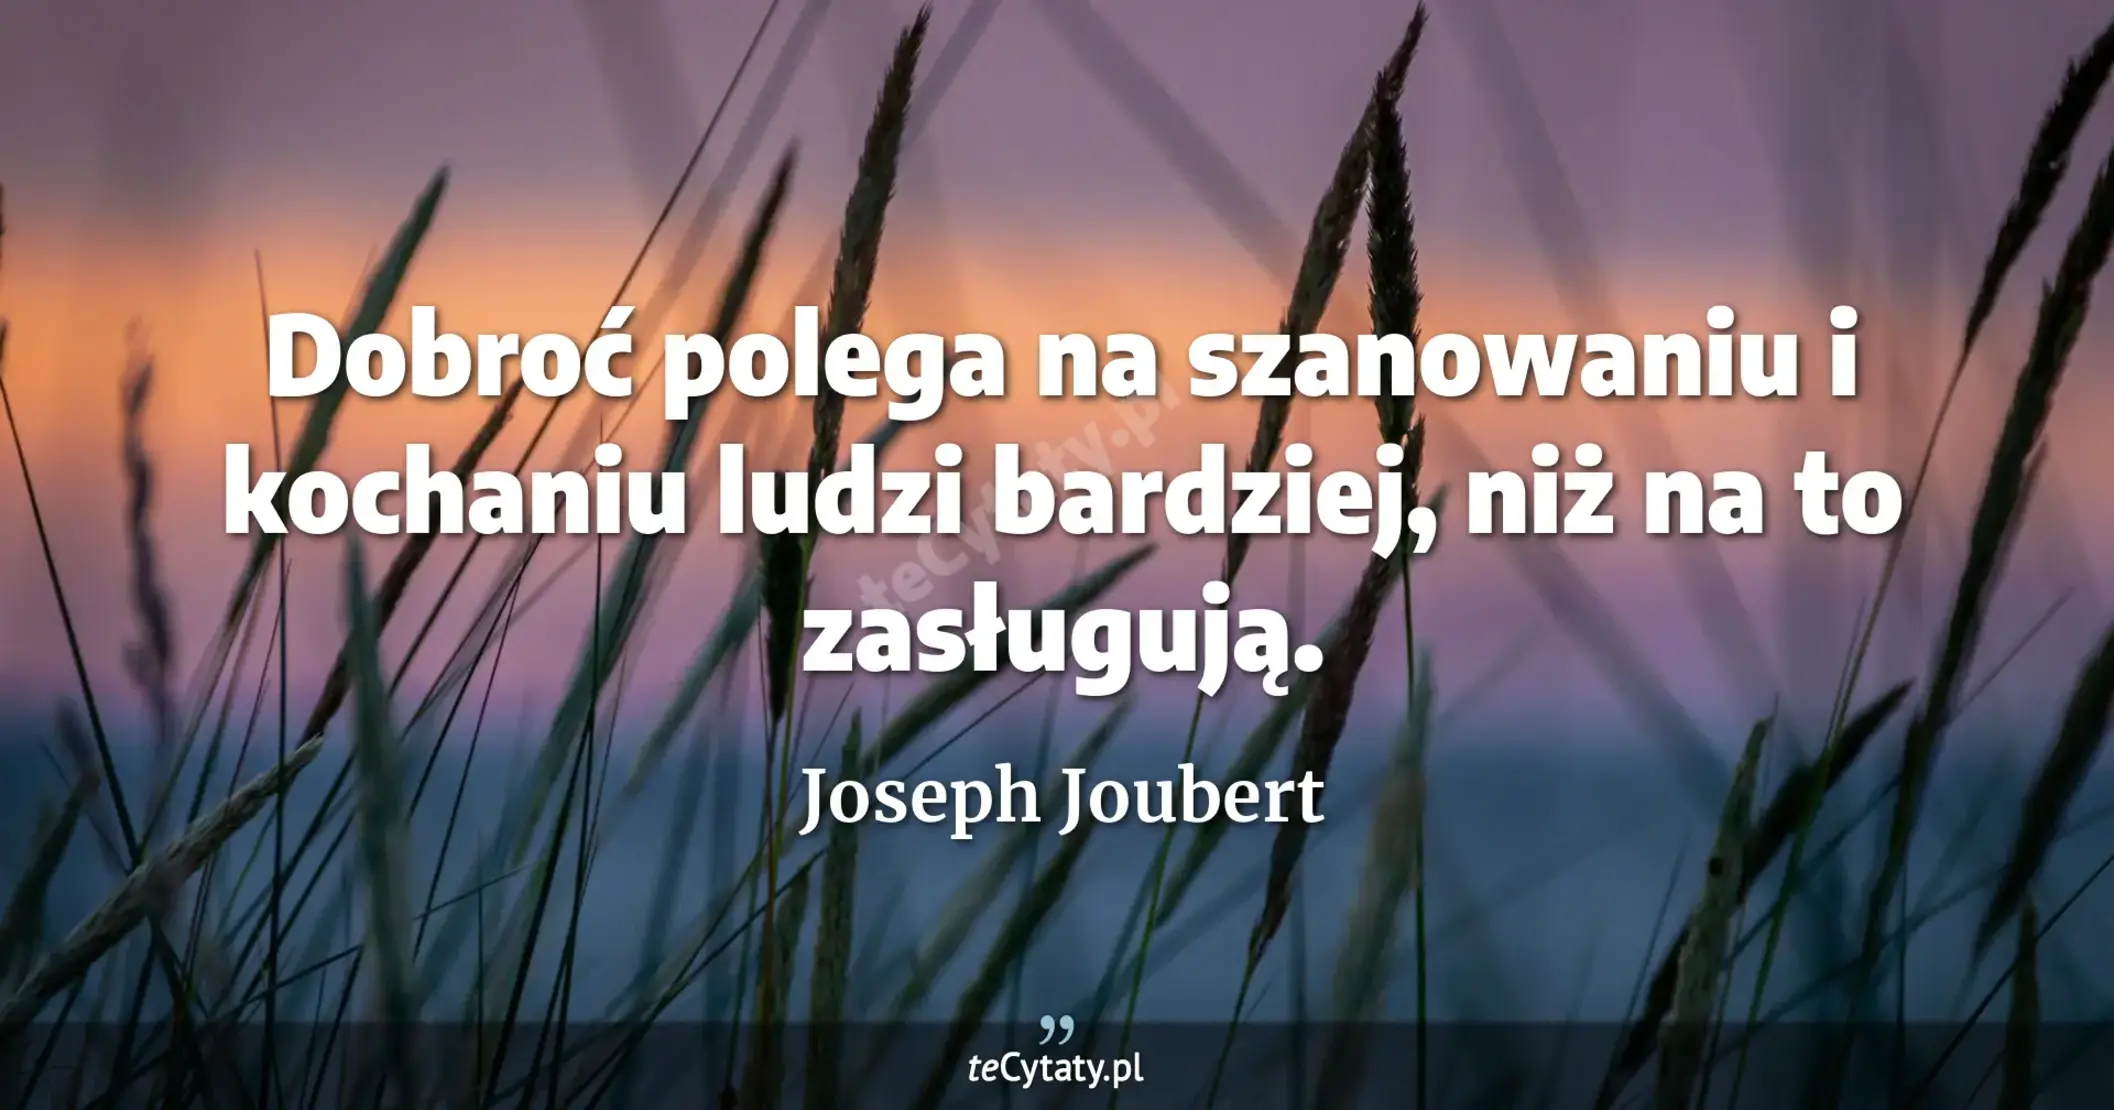 Dobroć polega na szanowaniu i kochaniu ludzi bardziej, niż na to zasługują. - Joseph Joubert